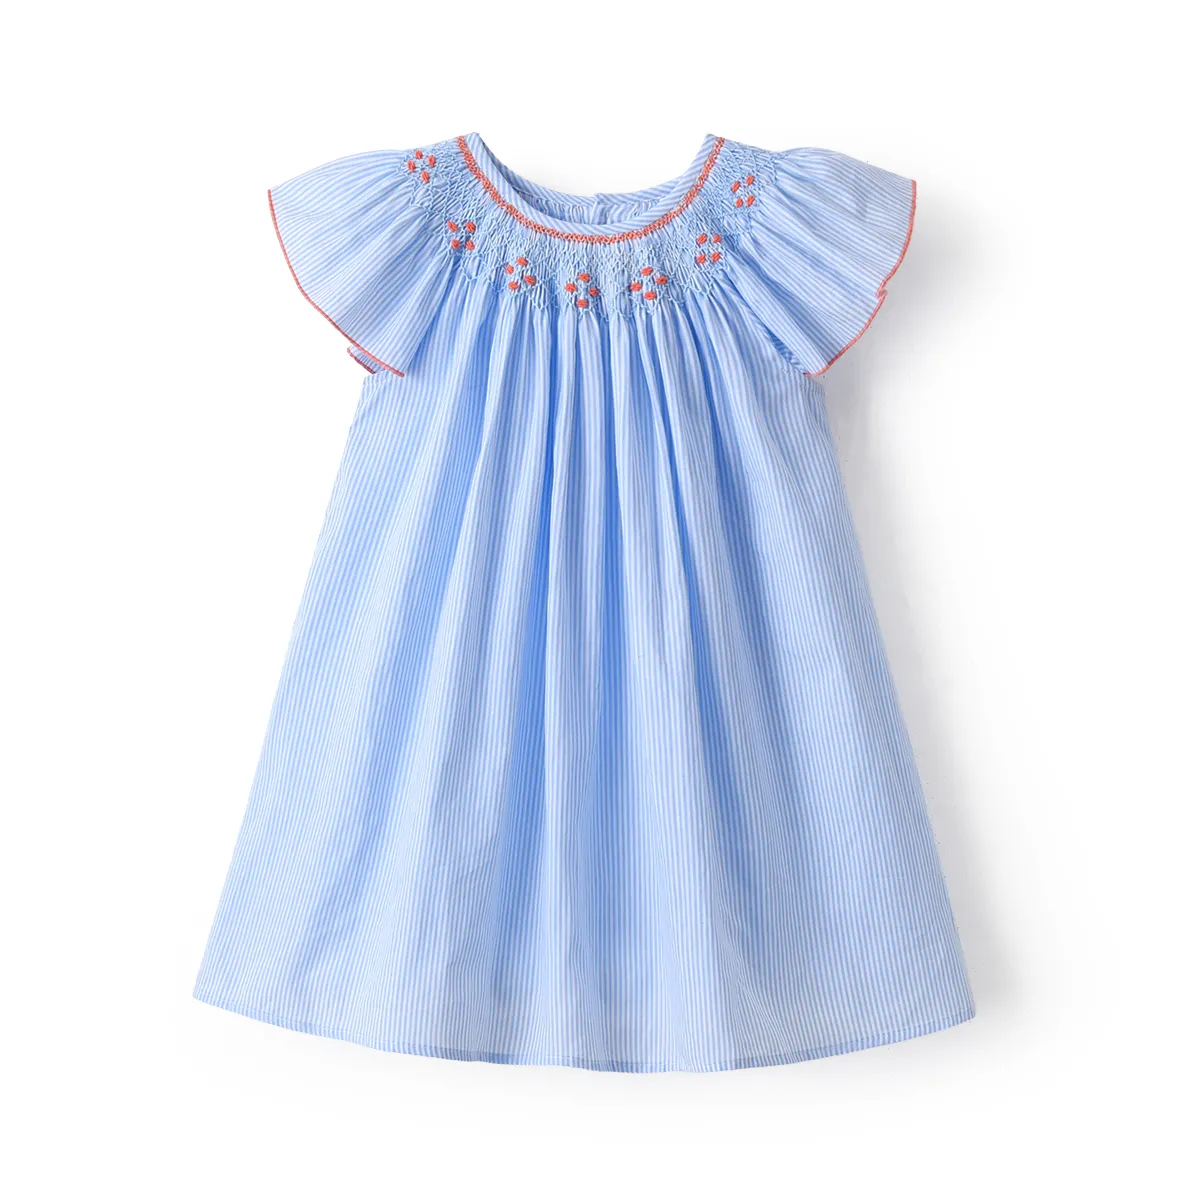 במלאי חדש בנות ארוך יד קפלי שמלות תינוק ספרדית Smocking כחול פרייר כותנה שמלות בוטיק ילדה Smocking שמלה